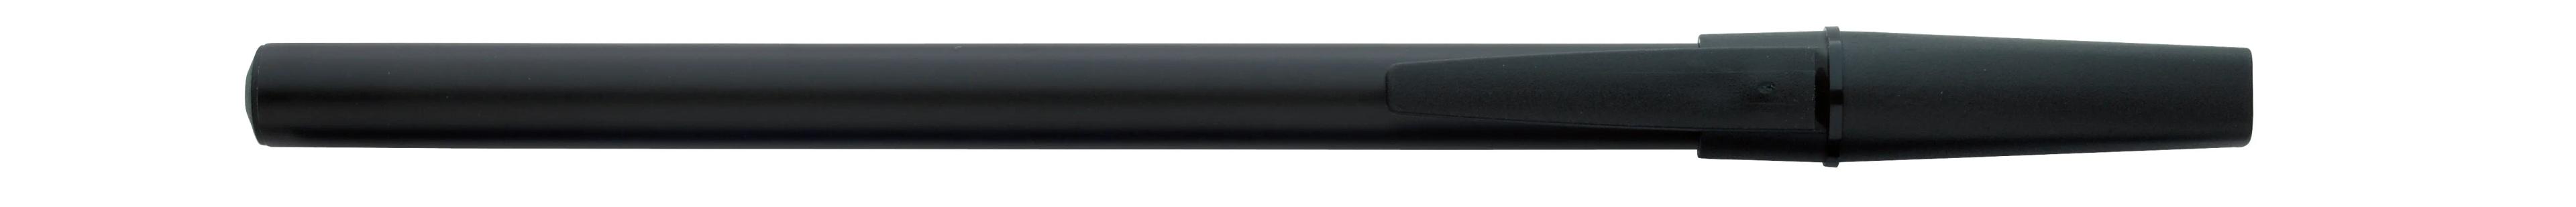 Corporate Promo Stick Pen 1 of 33